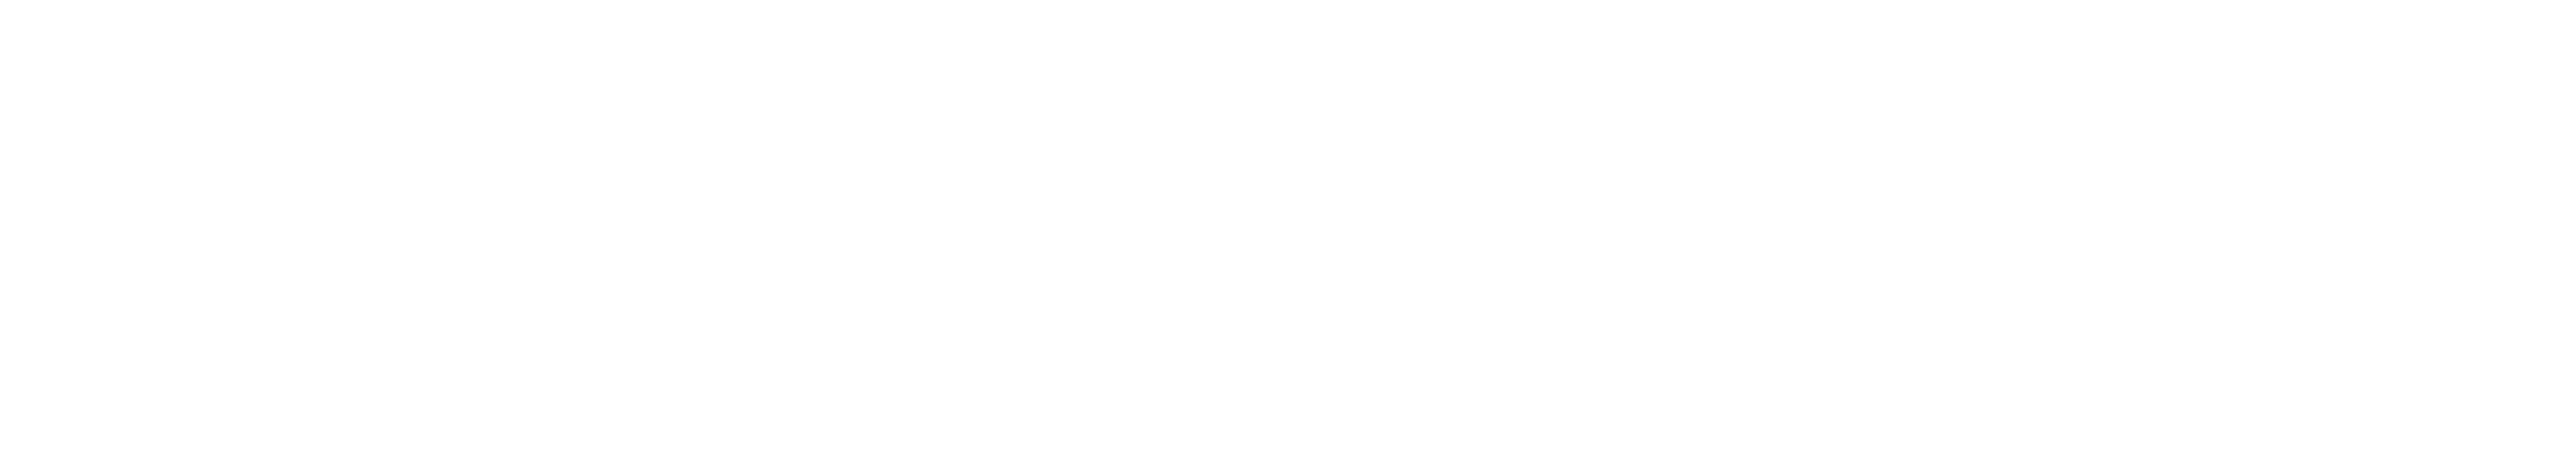 Confessions of Felix Krull logo